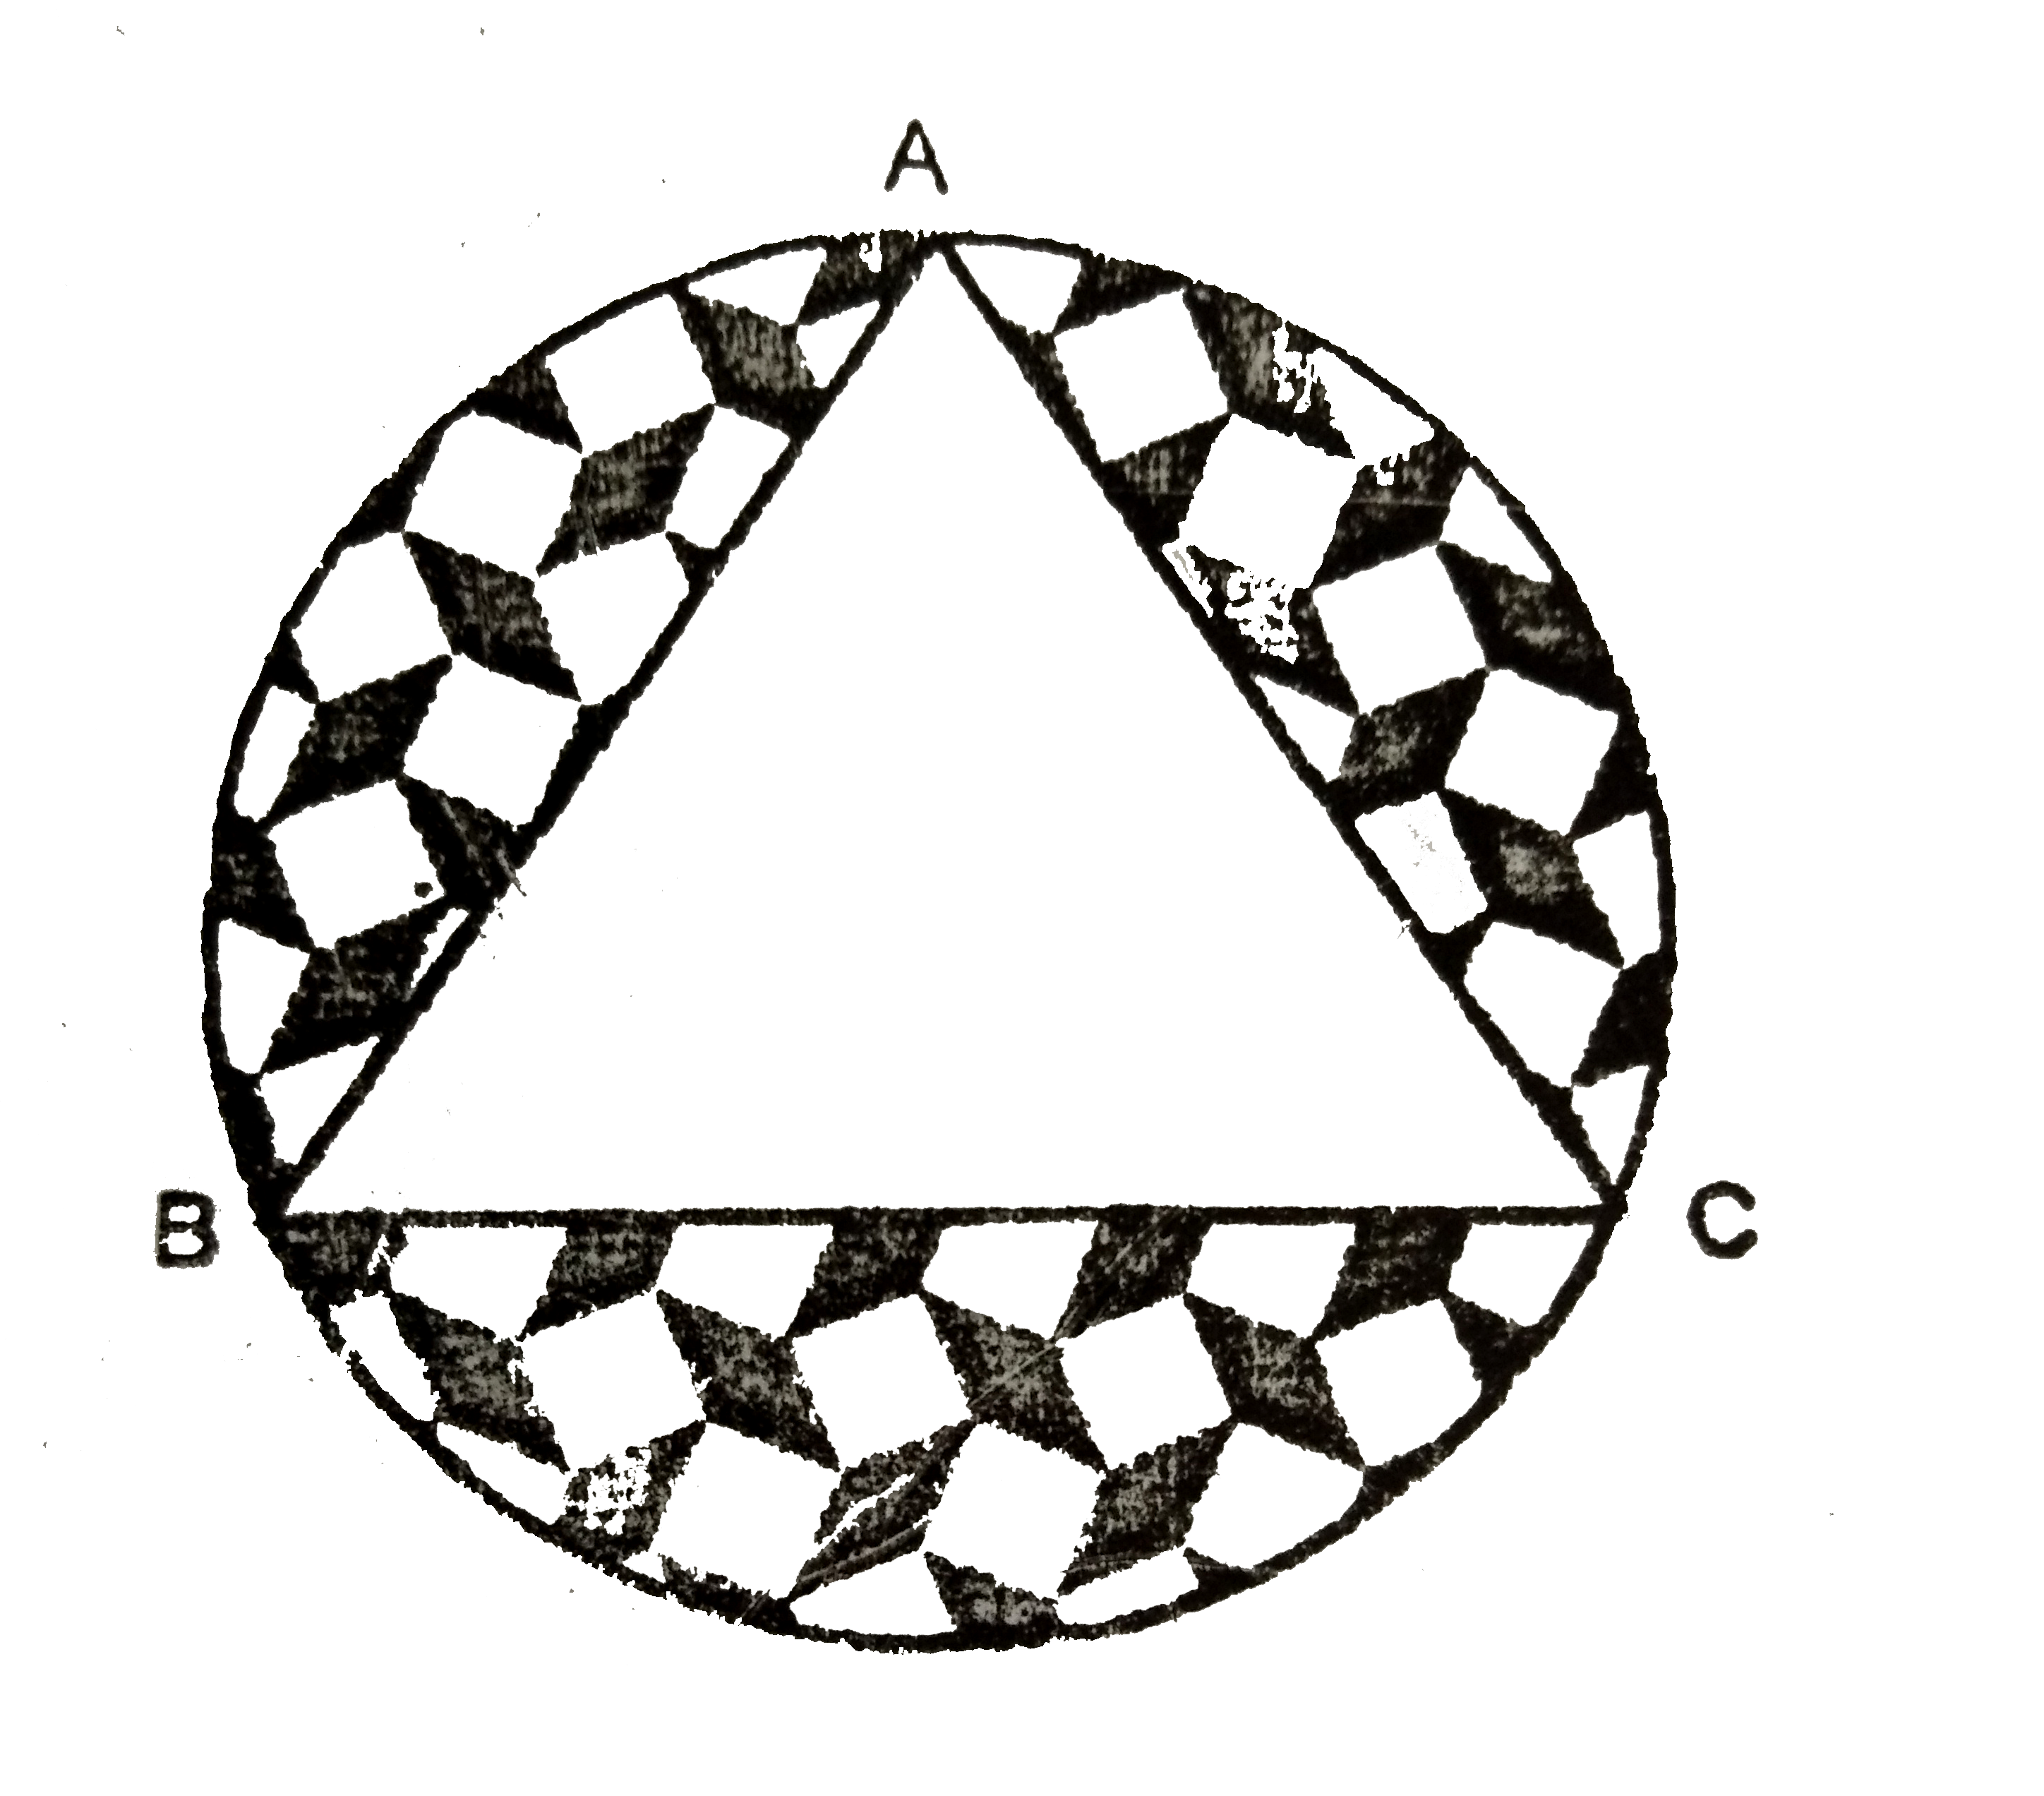 एक वृत्ताकार  मेजपोश  जिसकी  त्रिज्या 32 cm  है, के  बीच  में एक समबाहु त्रिभुज ABC  छोड़ते हुए  एक  डिजाइन  बना हुआ  है, जैसाकि  चित्र  में  दिखाया  गया  है | इस  छायांकित  डिजाइन  का क्षेत्रफल  ज्ञात  कीजिये |